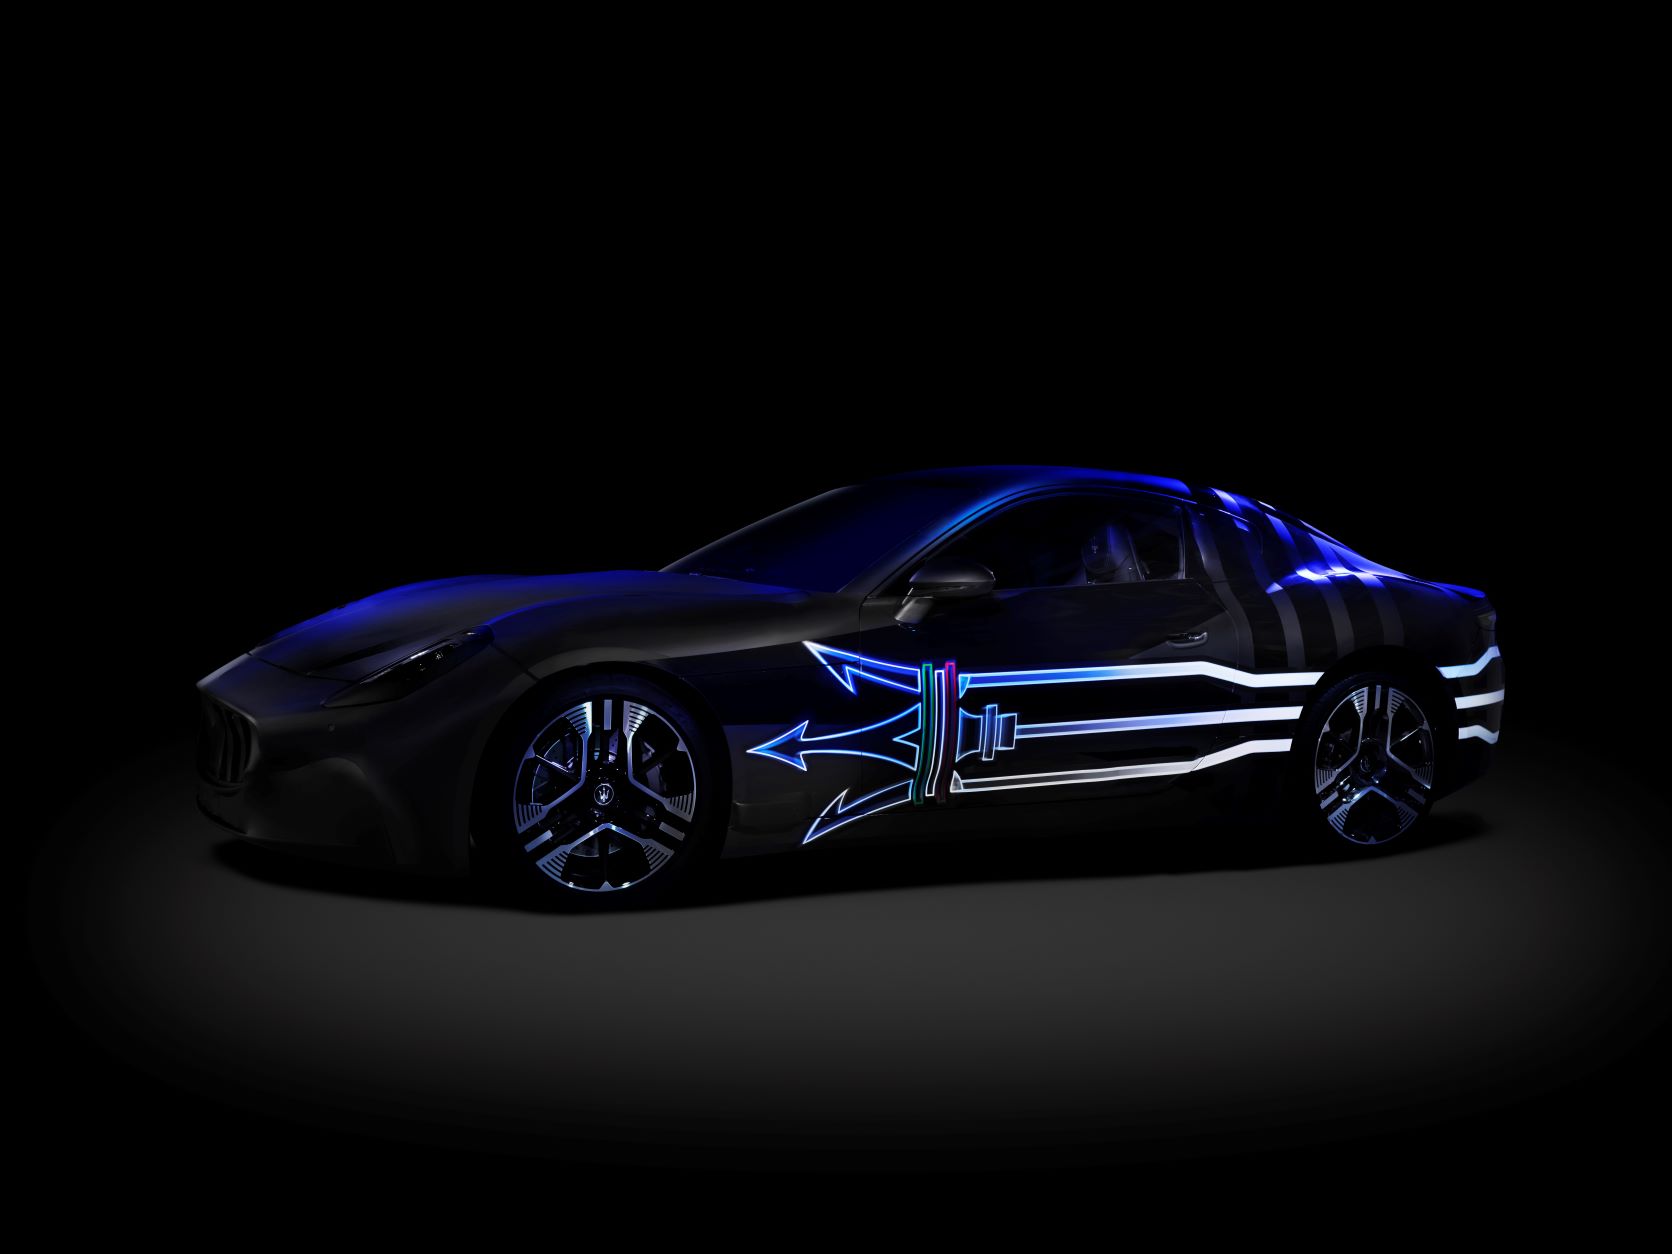 Maserati's new EV concept